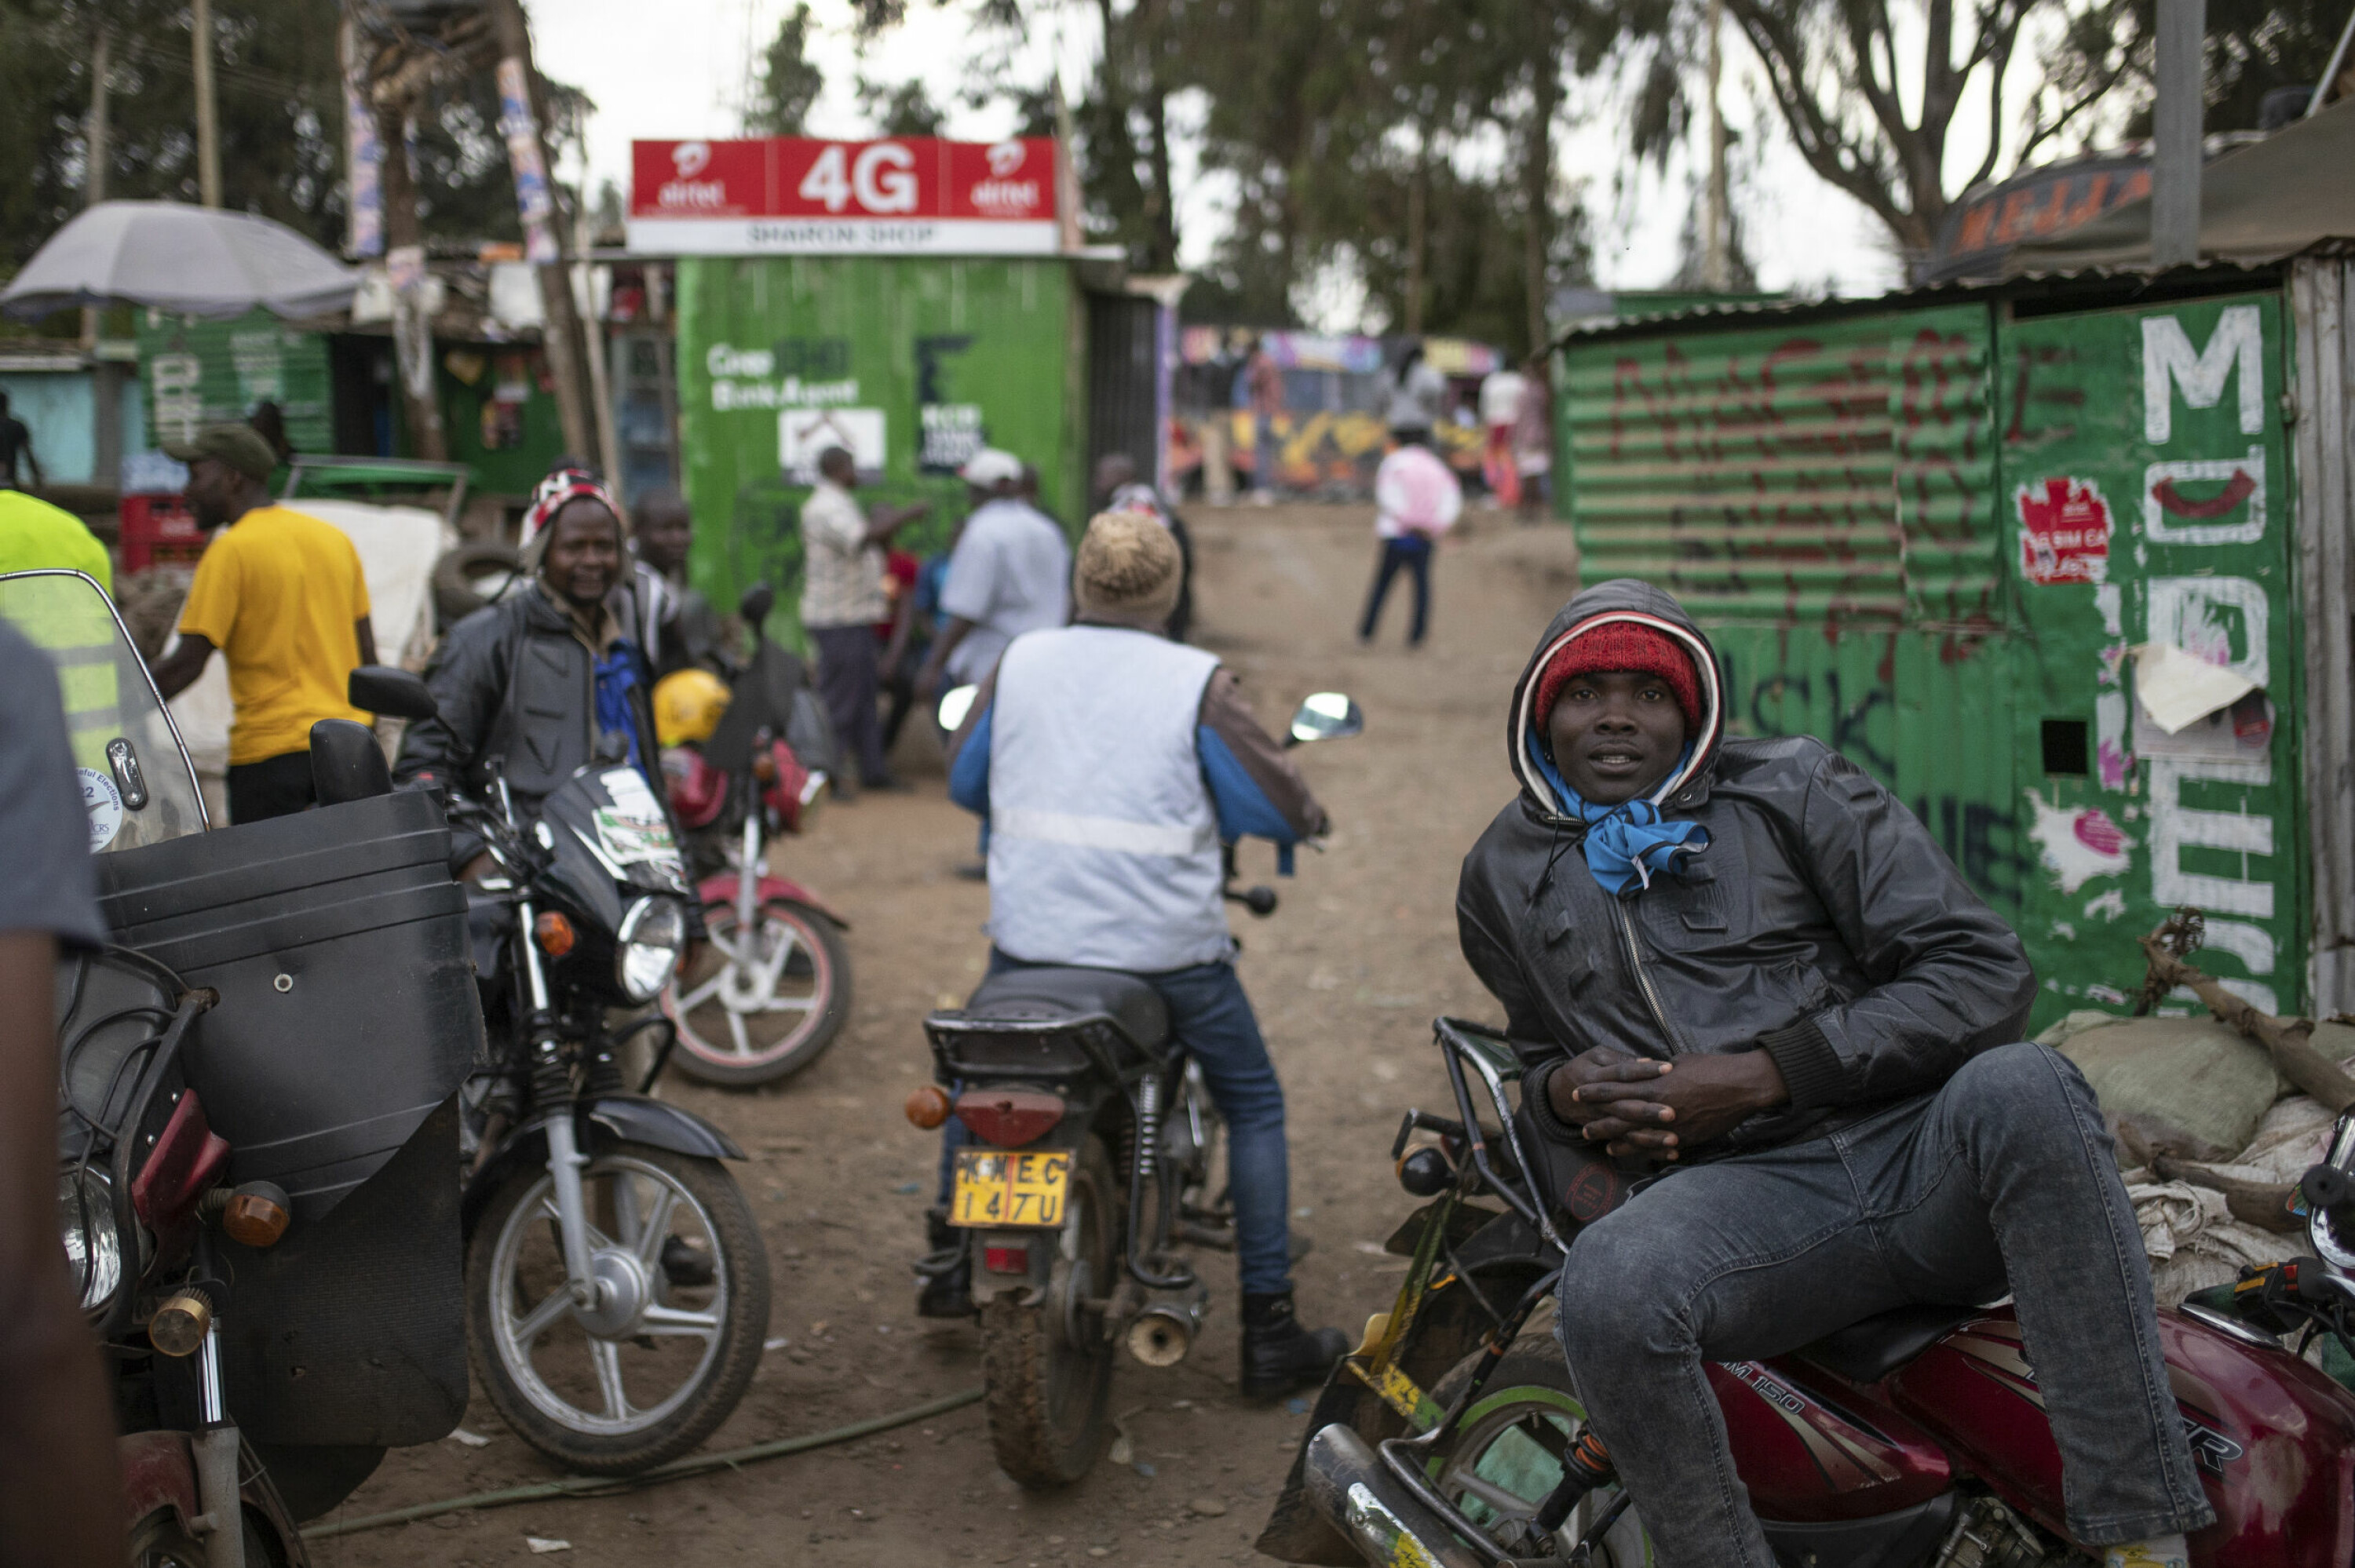 Motorsykkeltaxisjåfører venter på kunder i Nairobi, tirsdag 16. august 2022. Etter tilløp til uroligheter, var den kenyanske hovedstaden i all hovedsak rolig en dag etter at visepresident William Ruto ble erklært som valgvinner foran mangeårige opposisjonspolitiker Raila Odinga.